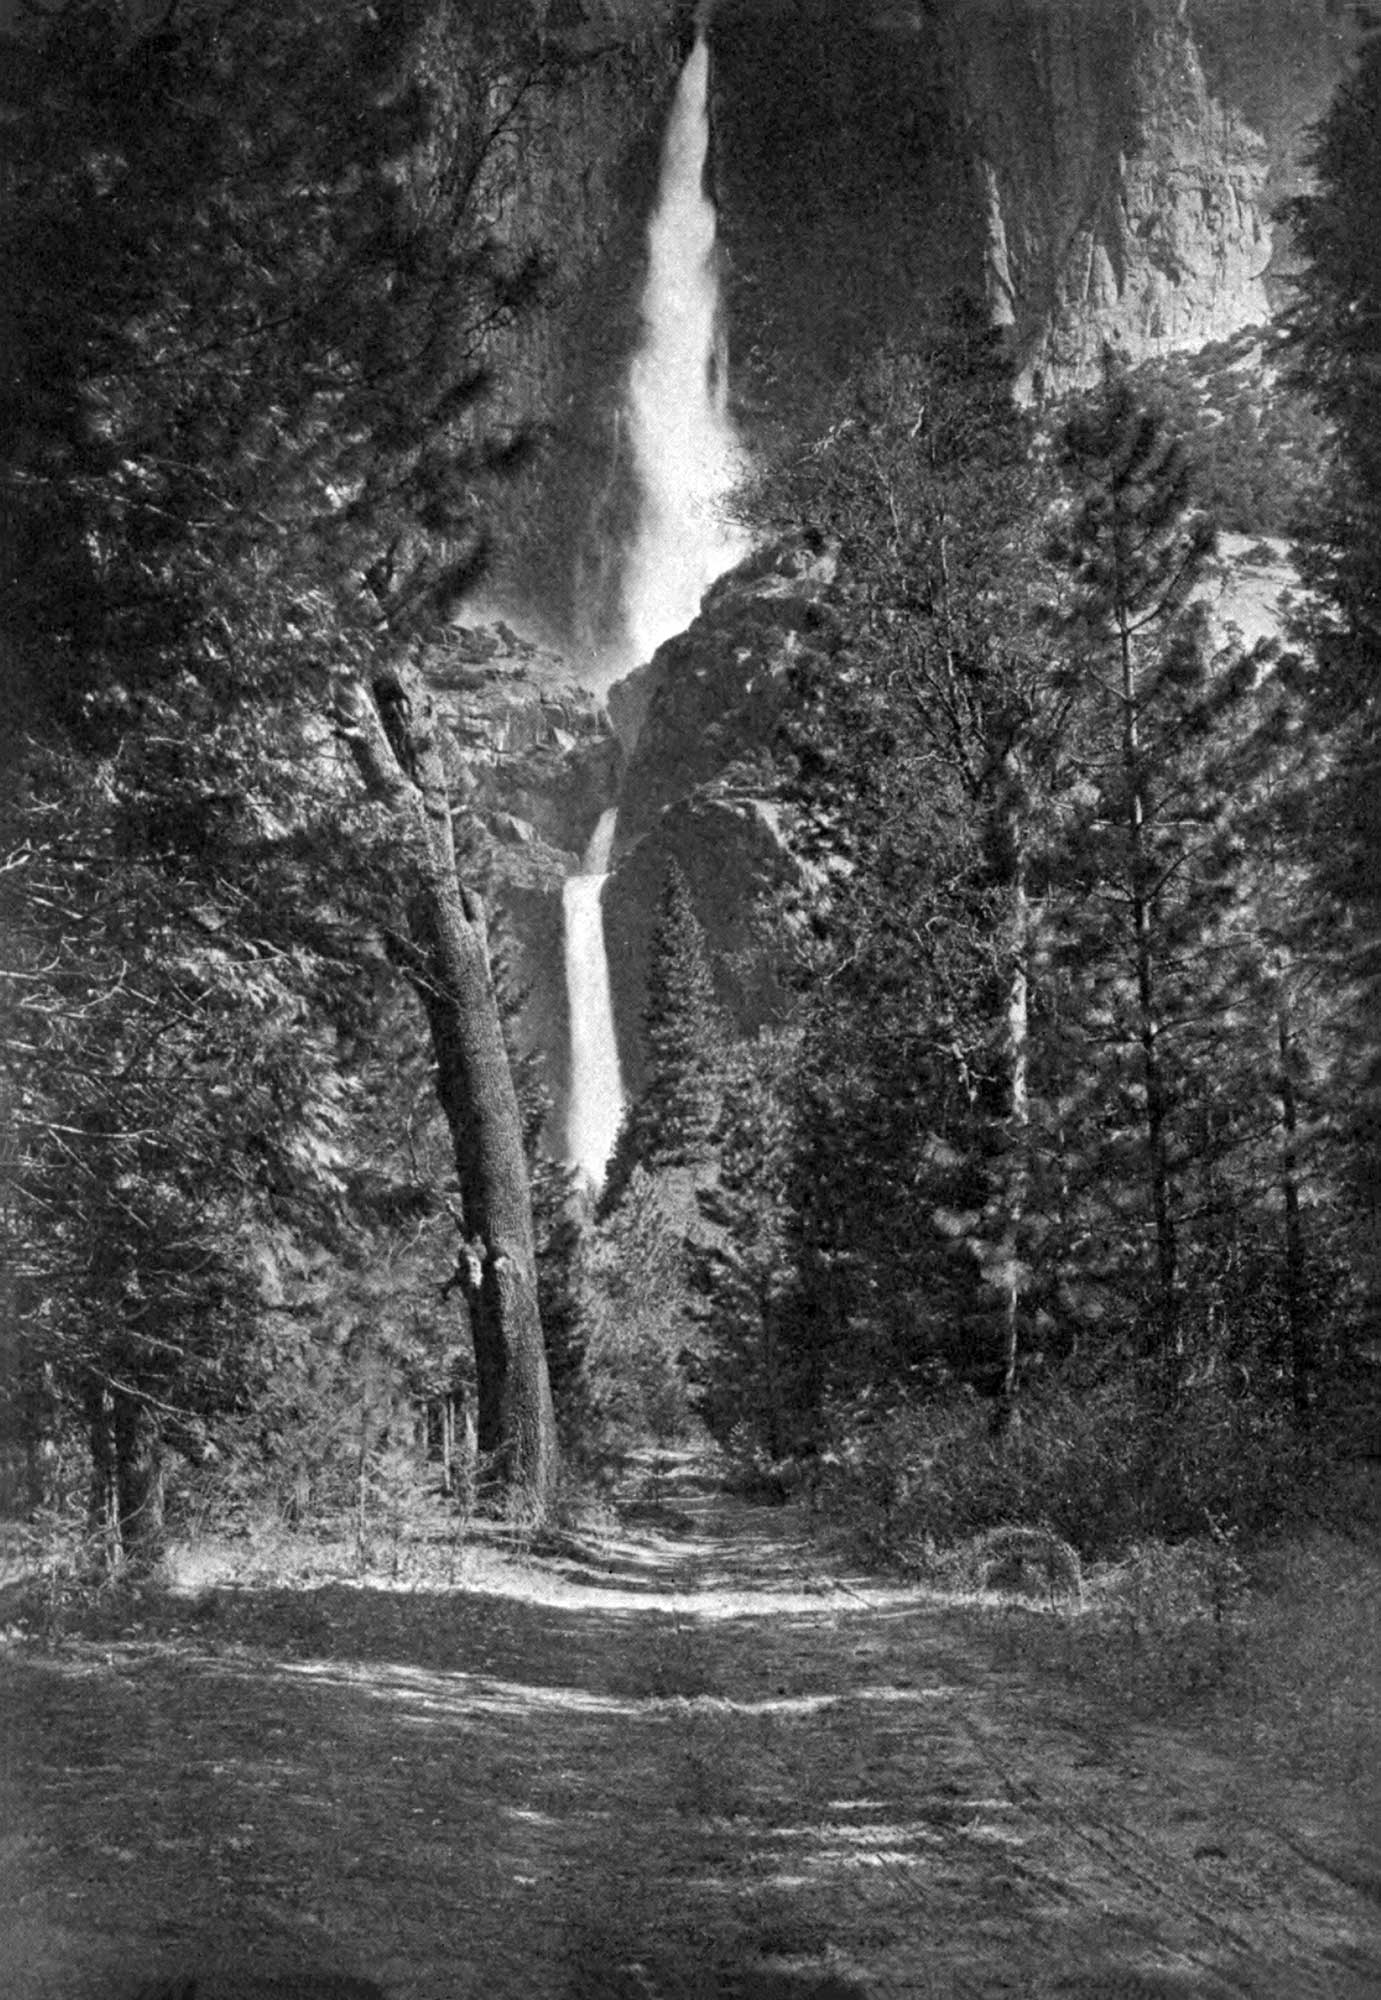 A photograph of Yosemite Falls.